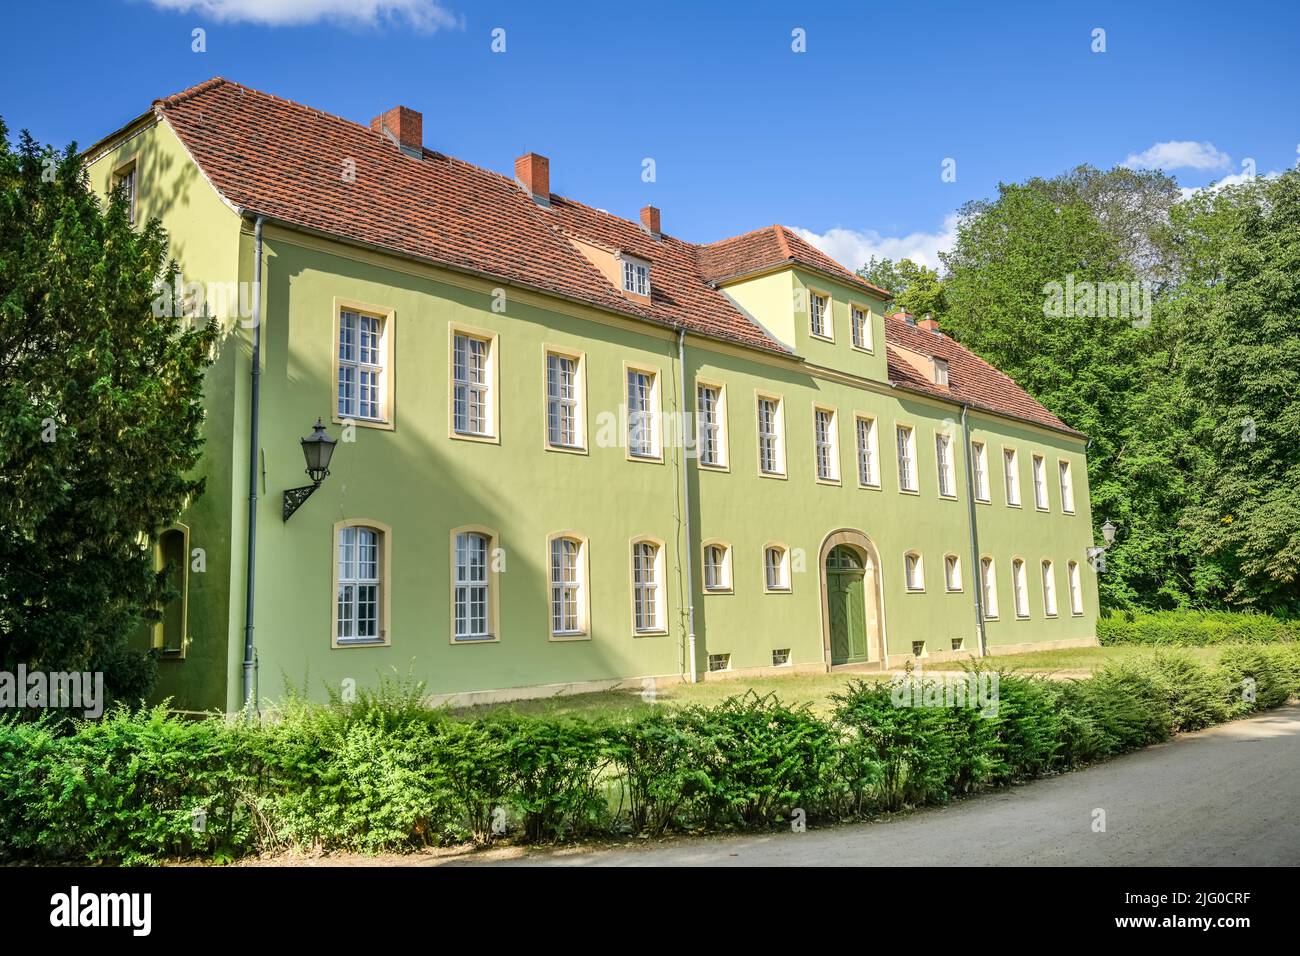 Grünes Haus, Neuer Garten, Potsdam, Brandenburg, Deutschland Stock Photo